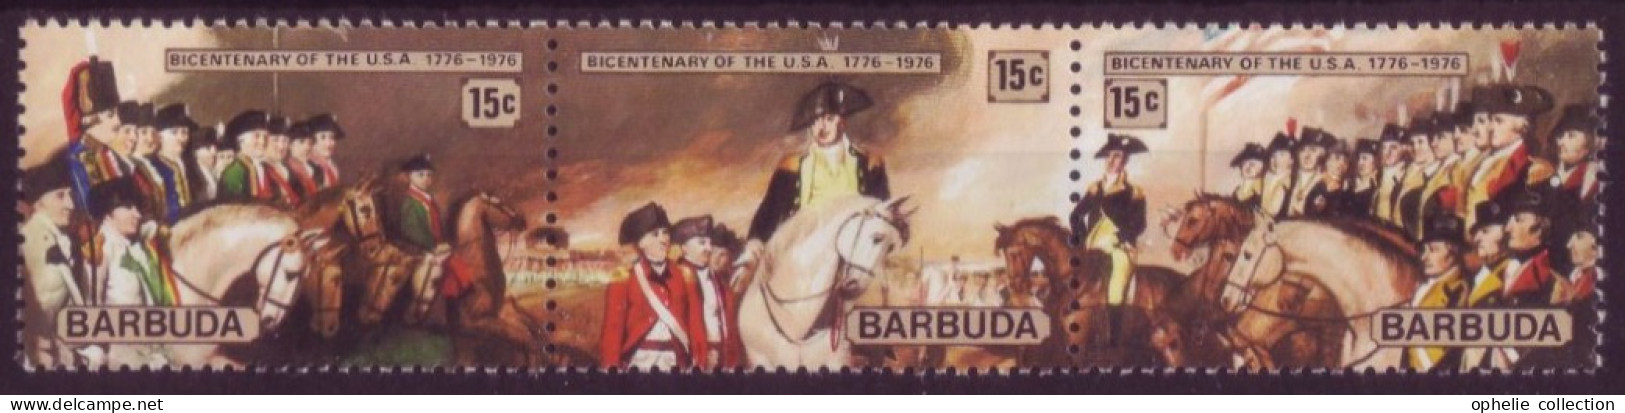 Amérique - Barbuda - Bandeau Bicentenary Of The USA  1776-1976  - 7334 - Otros - América